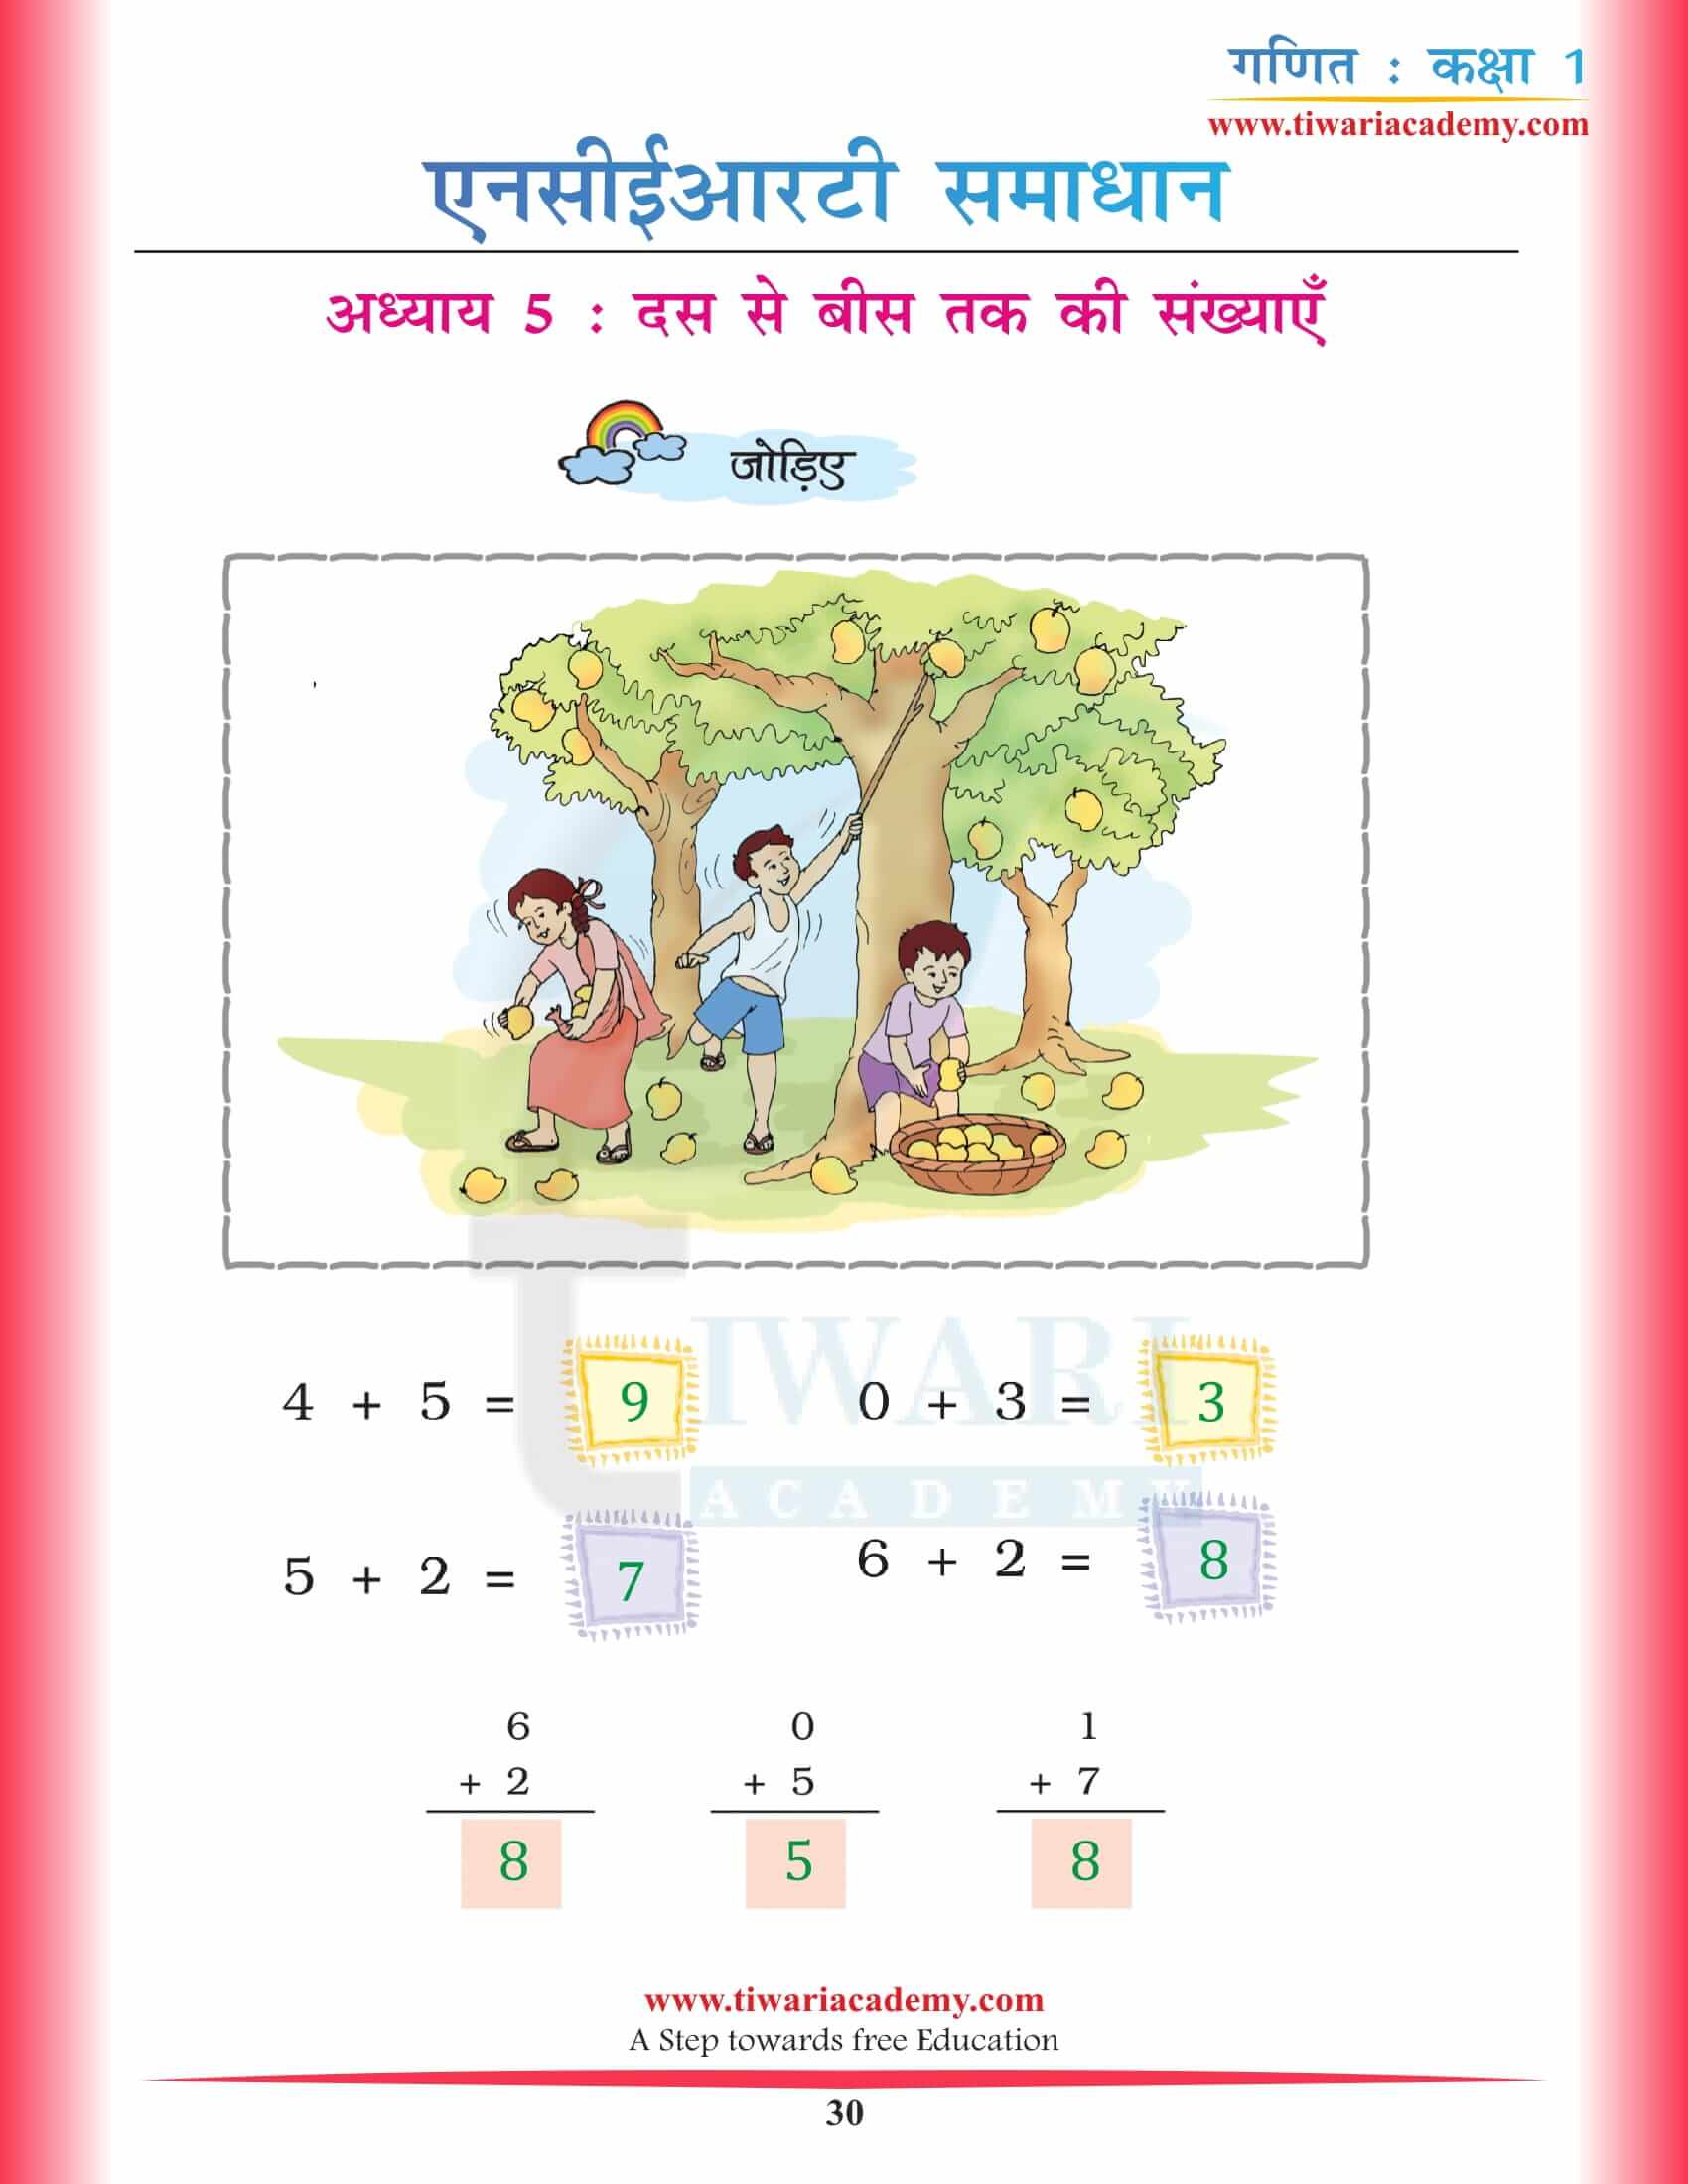 कक्षा 1 गणित का जादू अध्याय 5 एनसीईआरटी के हल हिंदी में